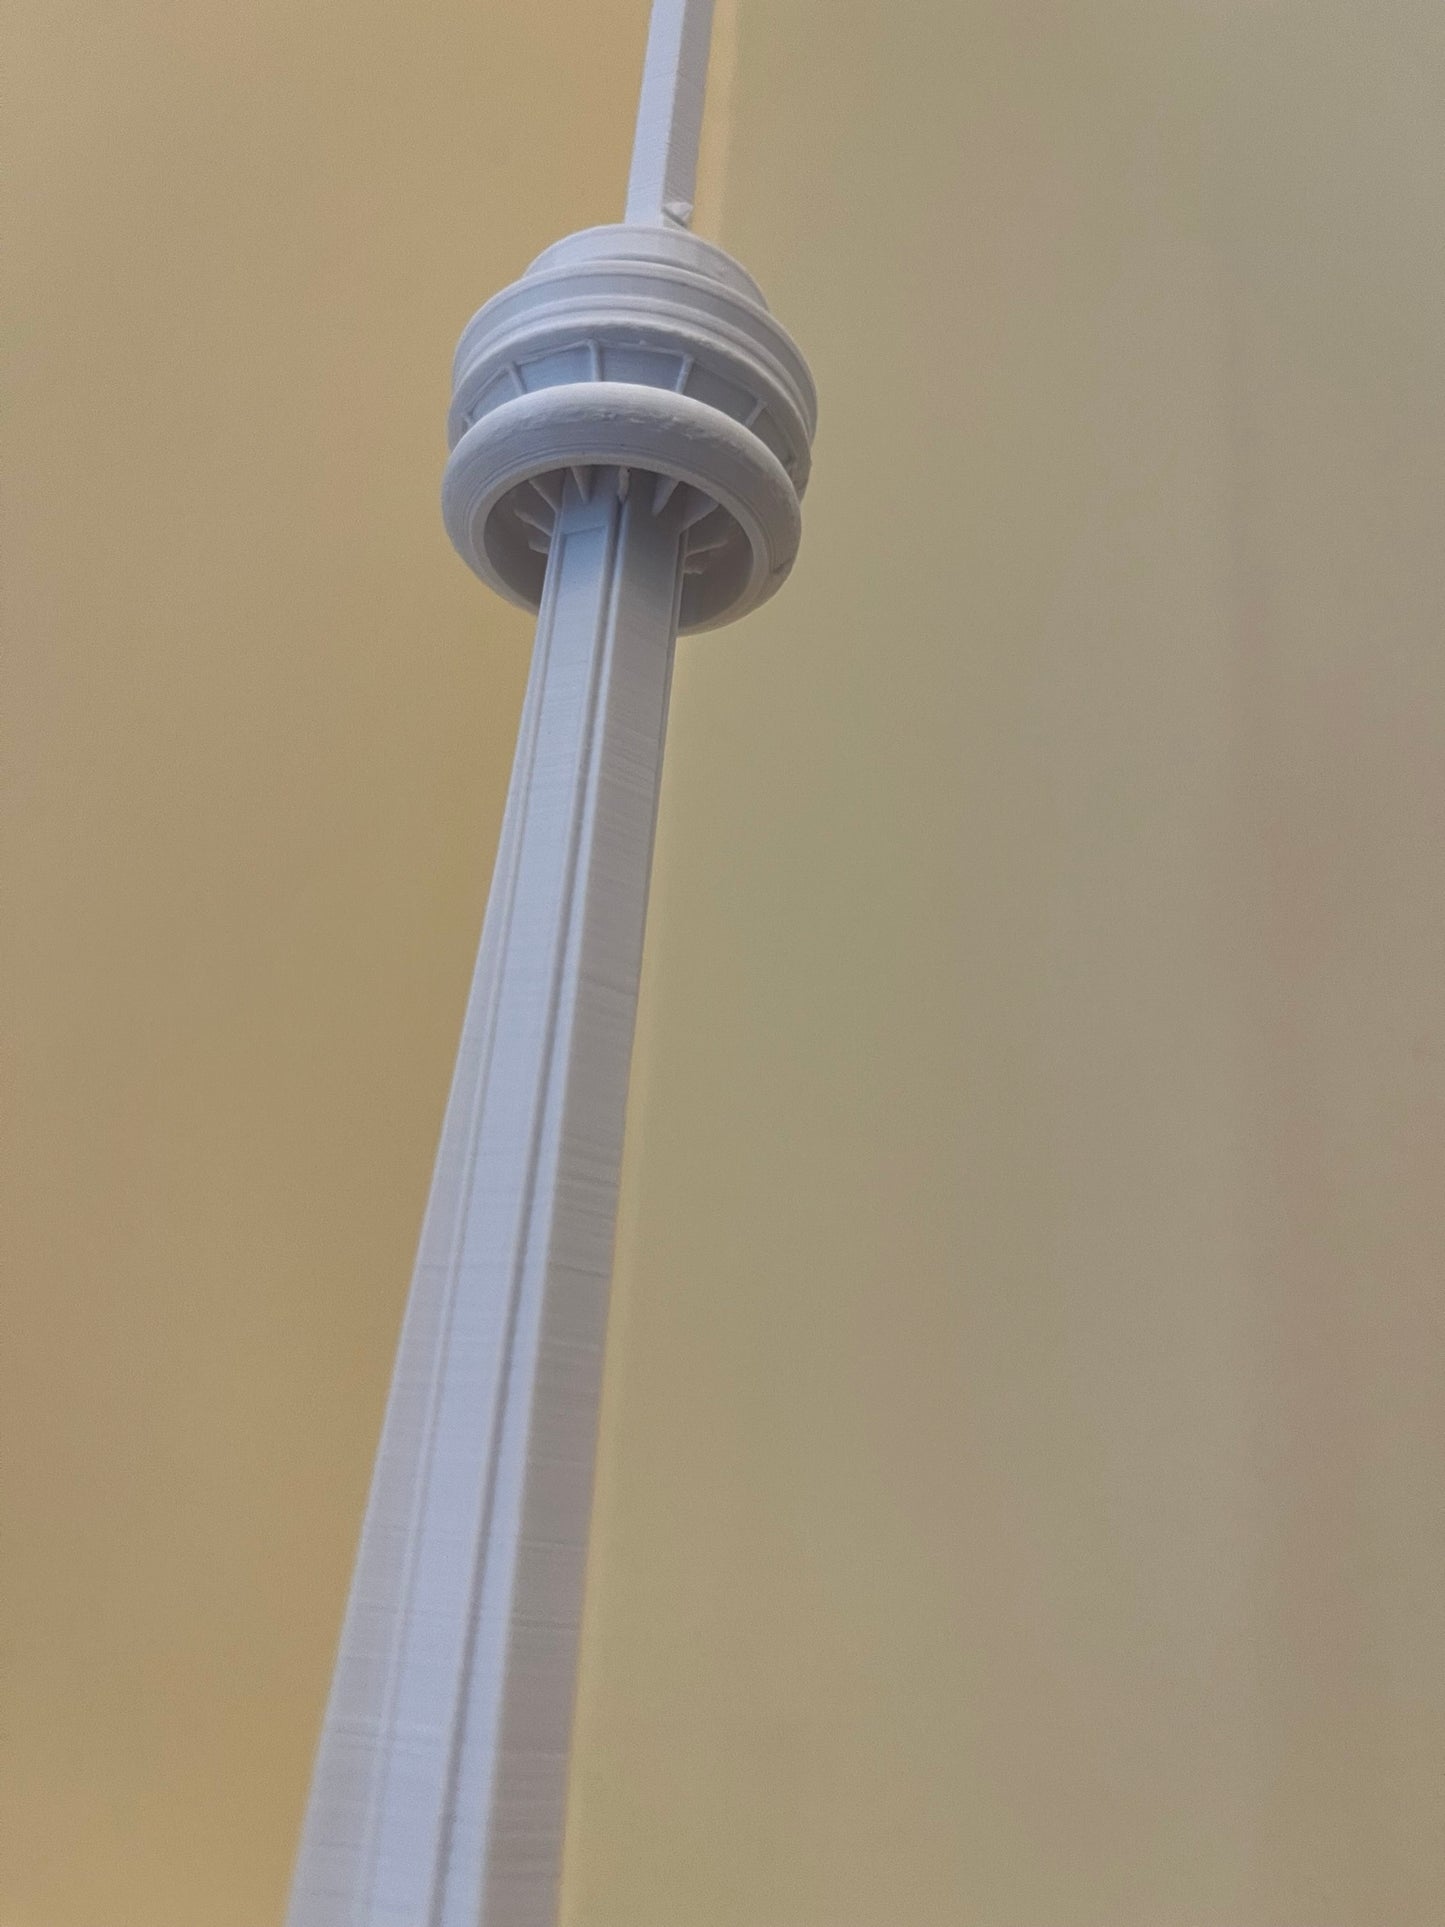 CN Tower Model- 3D Printed